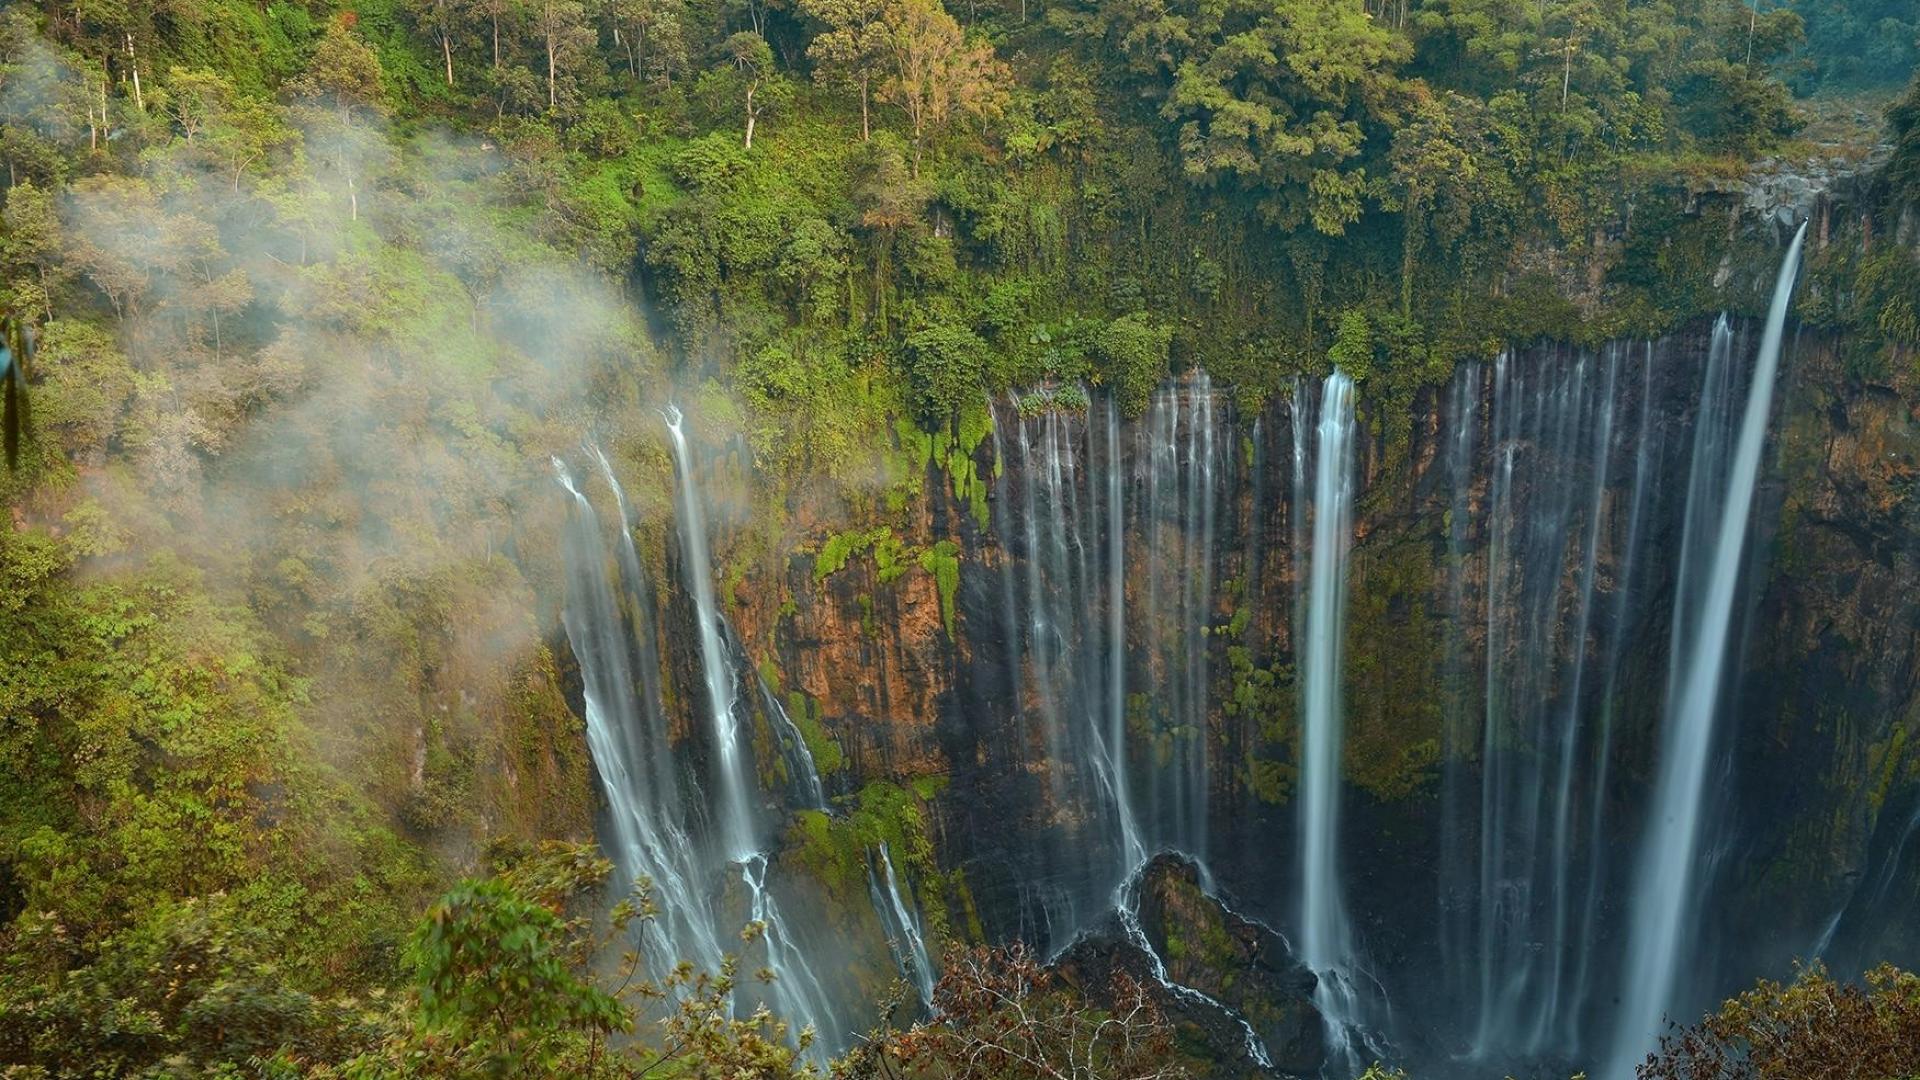 Descarga gratuita de fondo de pantalla para móvil de Cascadas, Cascada, Bosque, Árbol, Indonesia, Tierra/naturaleza.